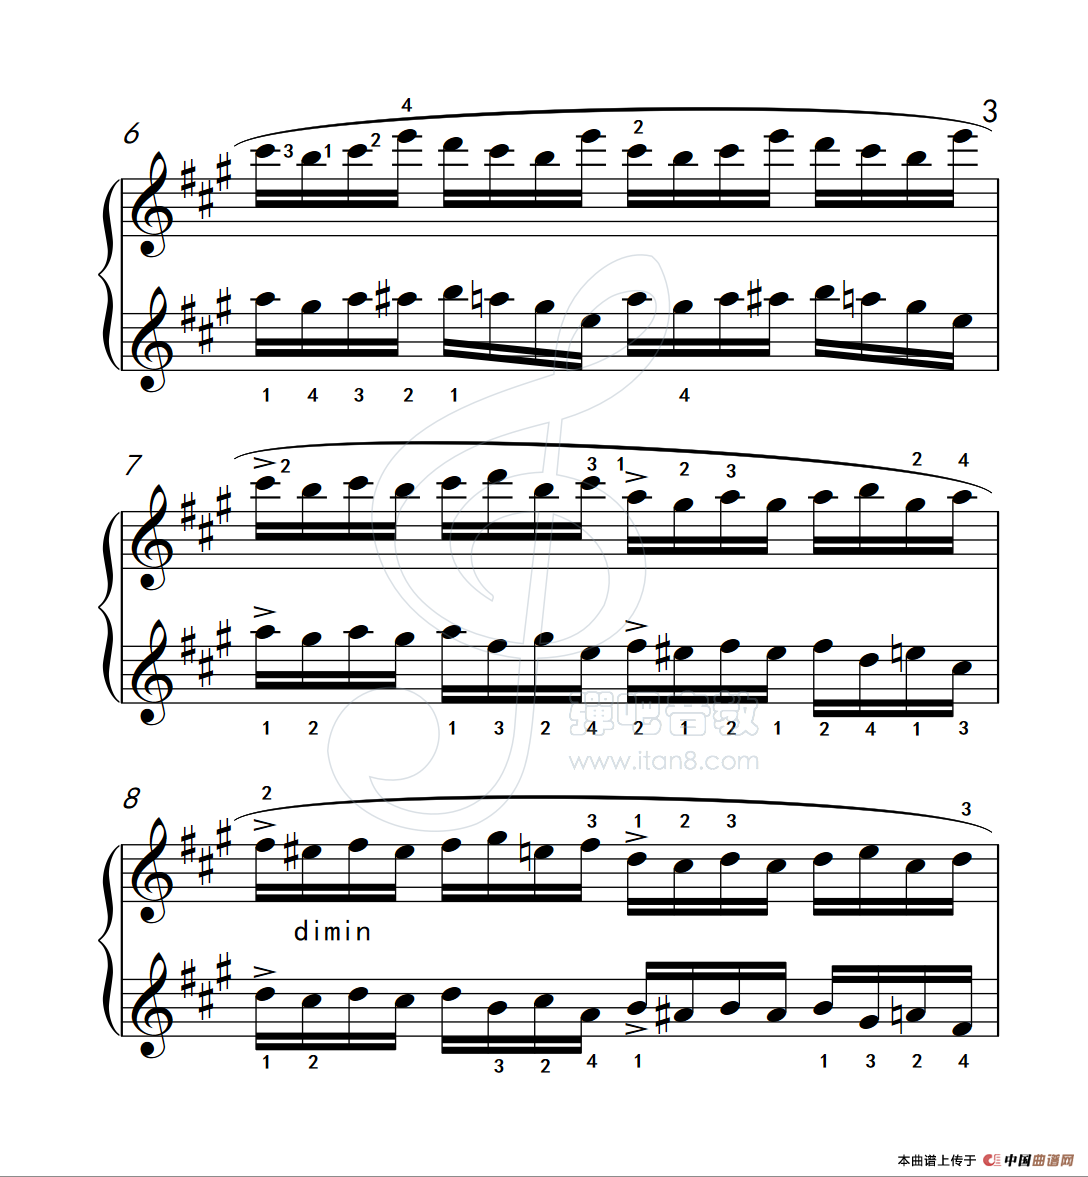 练习曲 4（克拉莫钢琴练习曲60首）